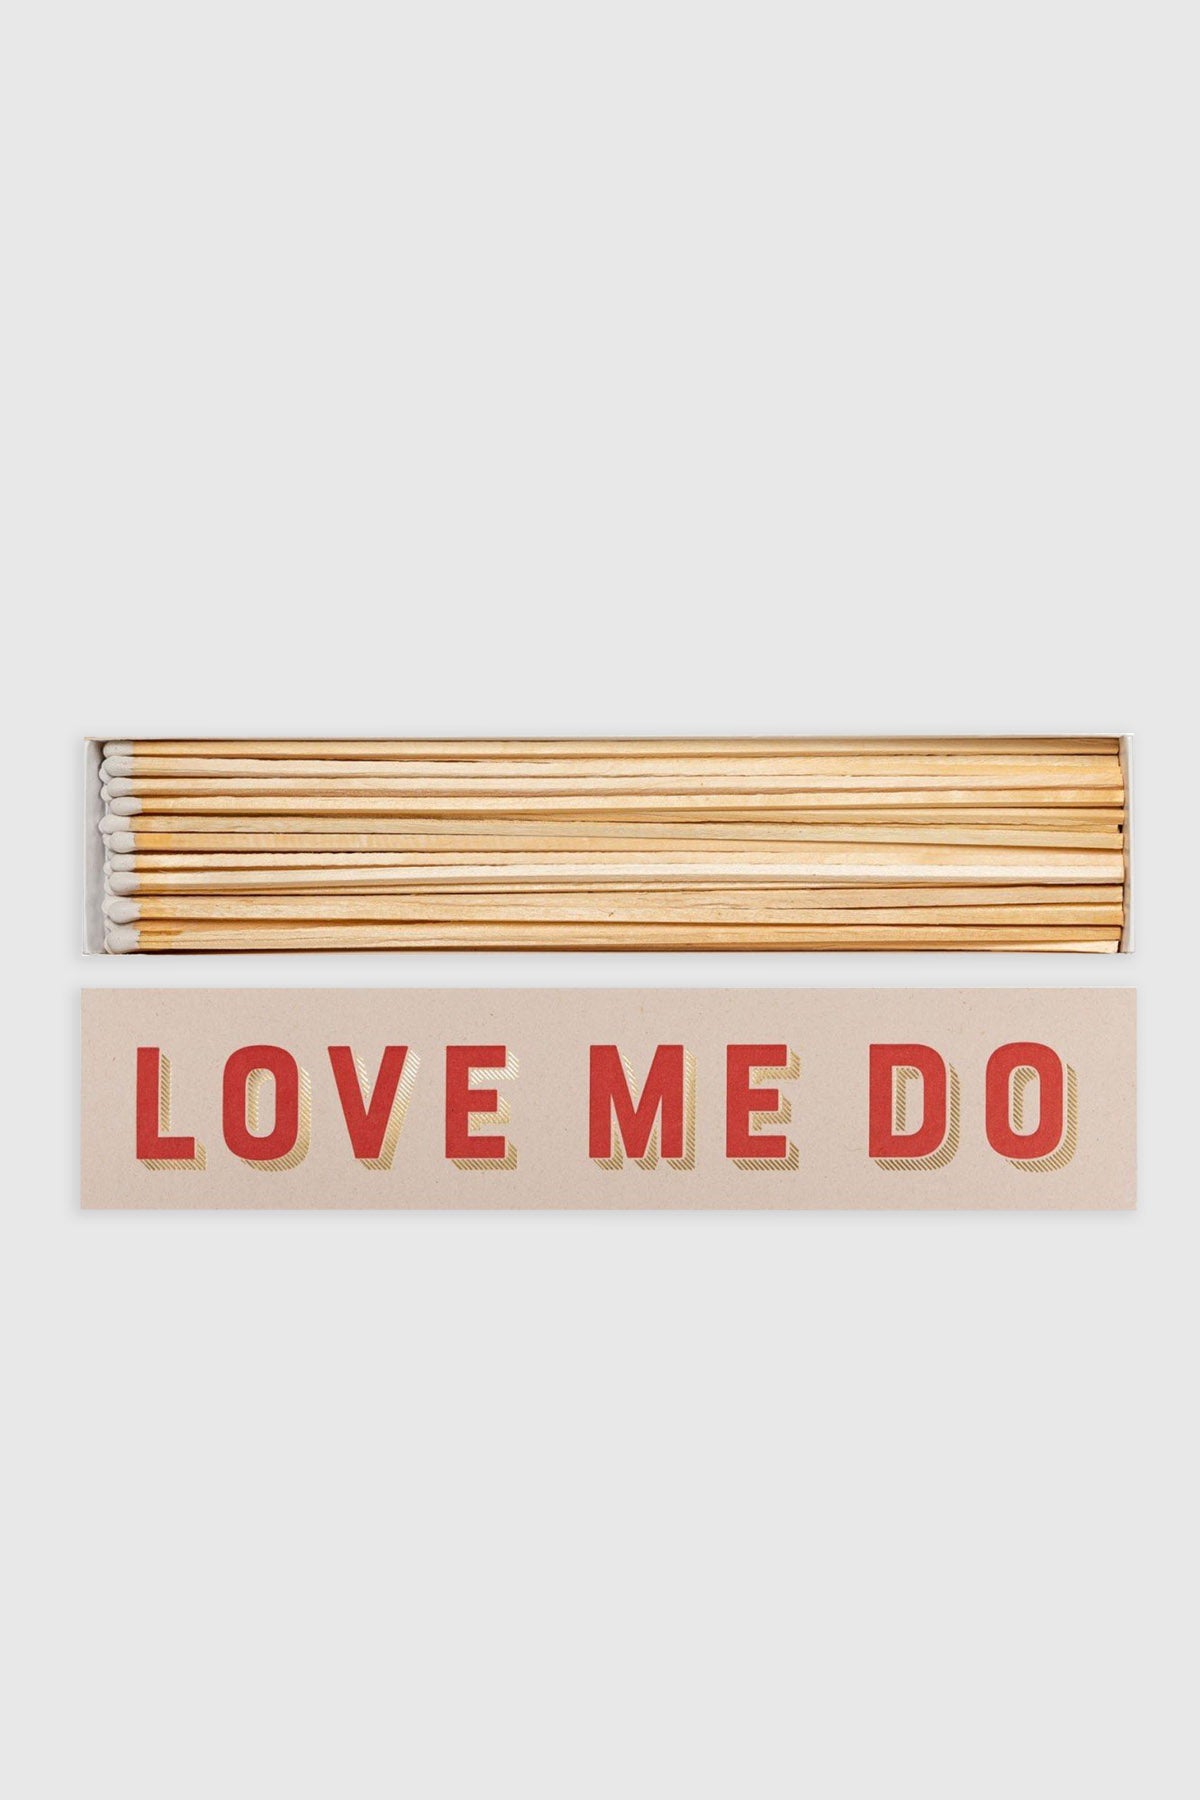 Matchbox "Love Me Do"